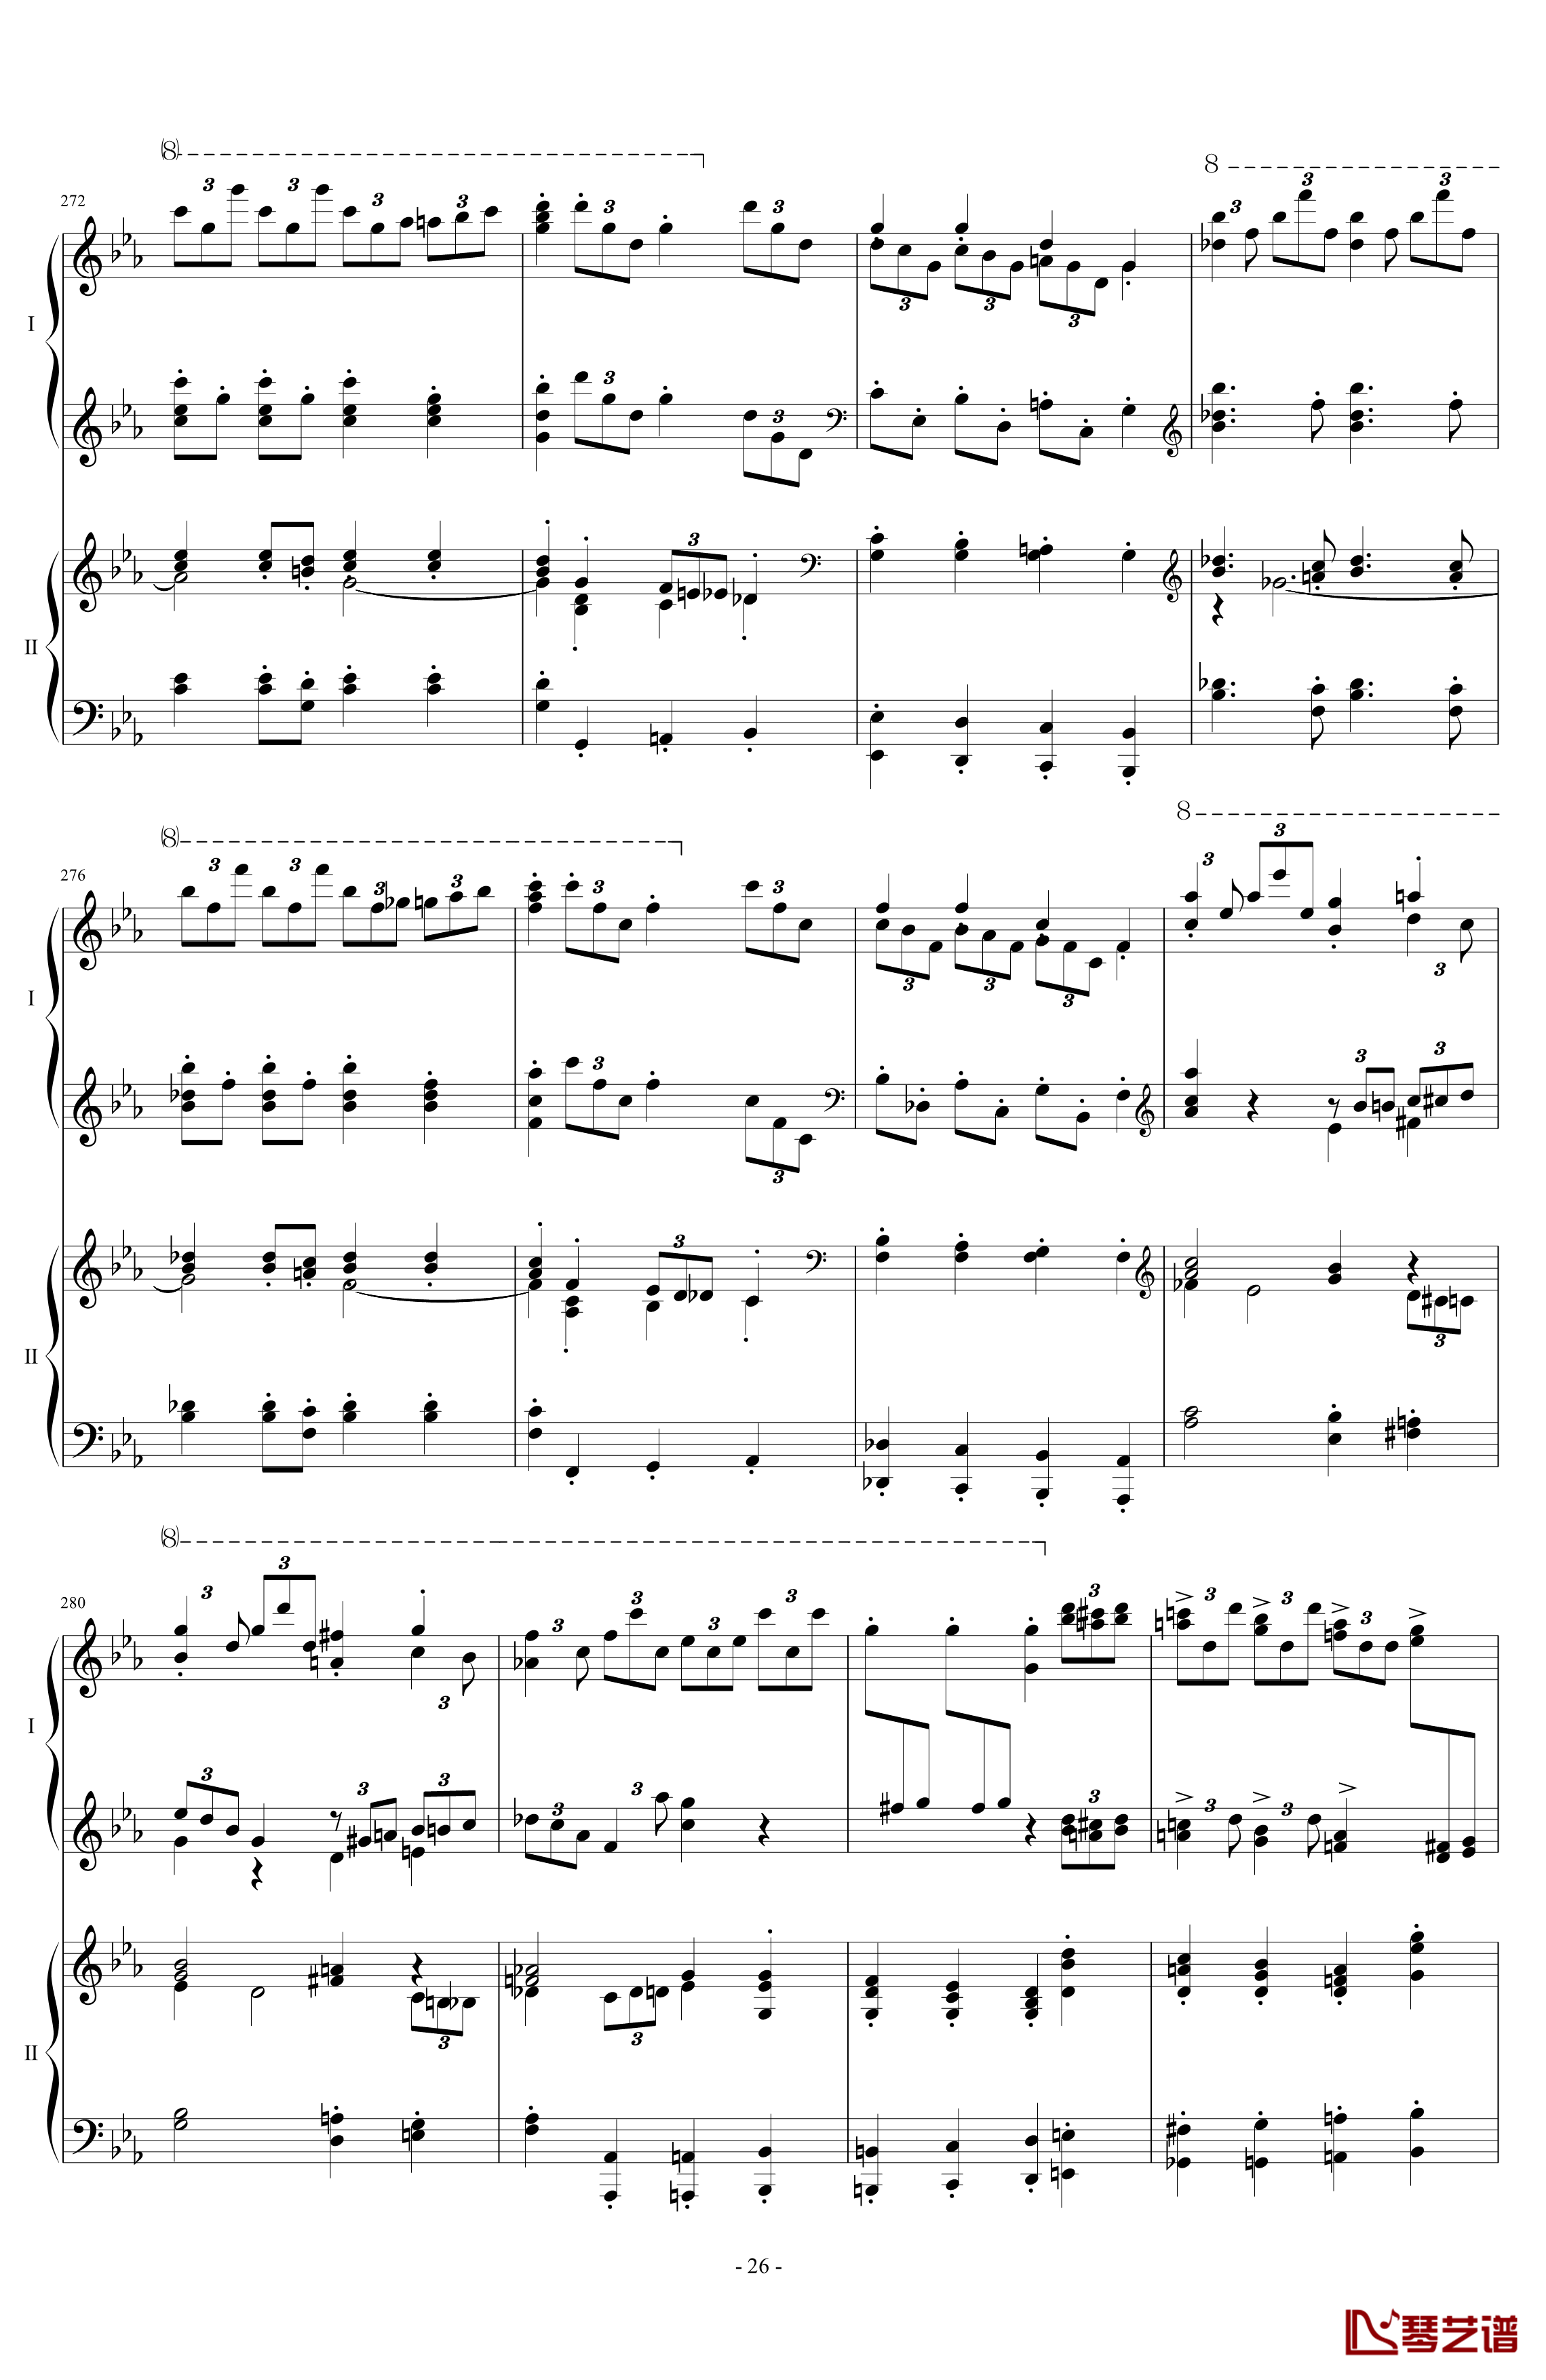 拉三第三乐章41页双钢琴钢琴谱-最难钢琴曲-拉赫马尼若夫26